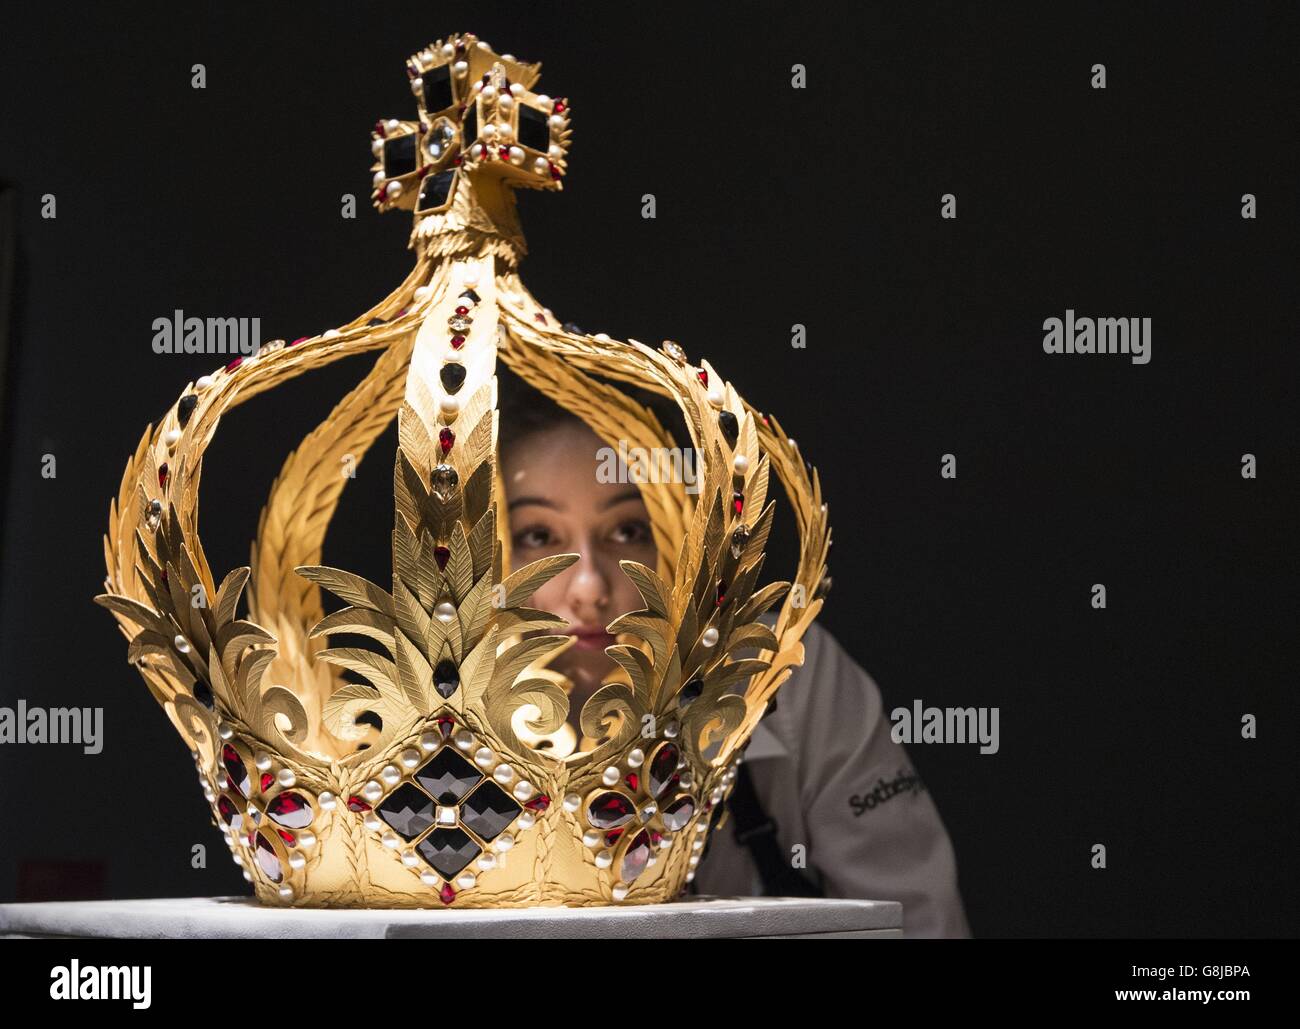 Un técnico de galería examina una corona hecha de 3,000 hojas de oro cortadas y anotadas individualmente por el artista Zoe Bradley, que se exhibirá durante la próxima venta de Sotheby's Royal and Noble Descent' que tendrá lugar entre el 14 y el 18 de enero en Londres. Foto de stock